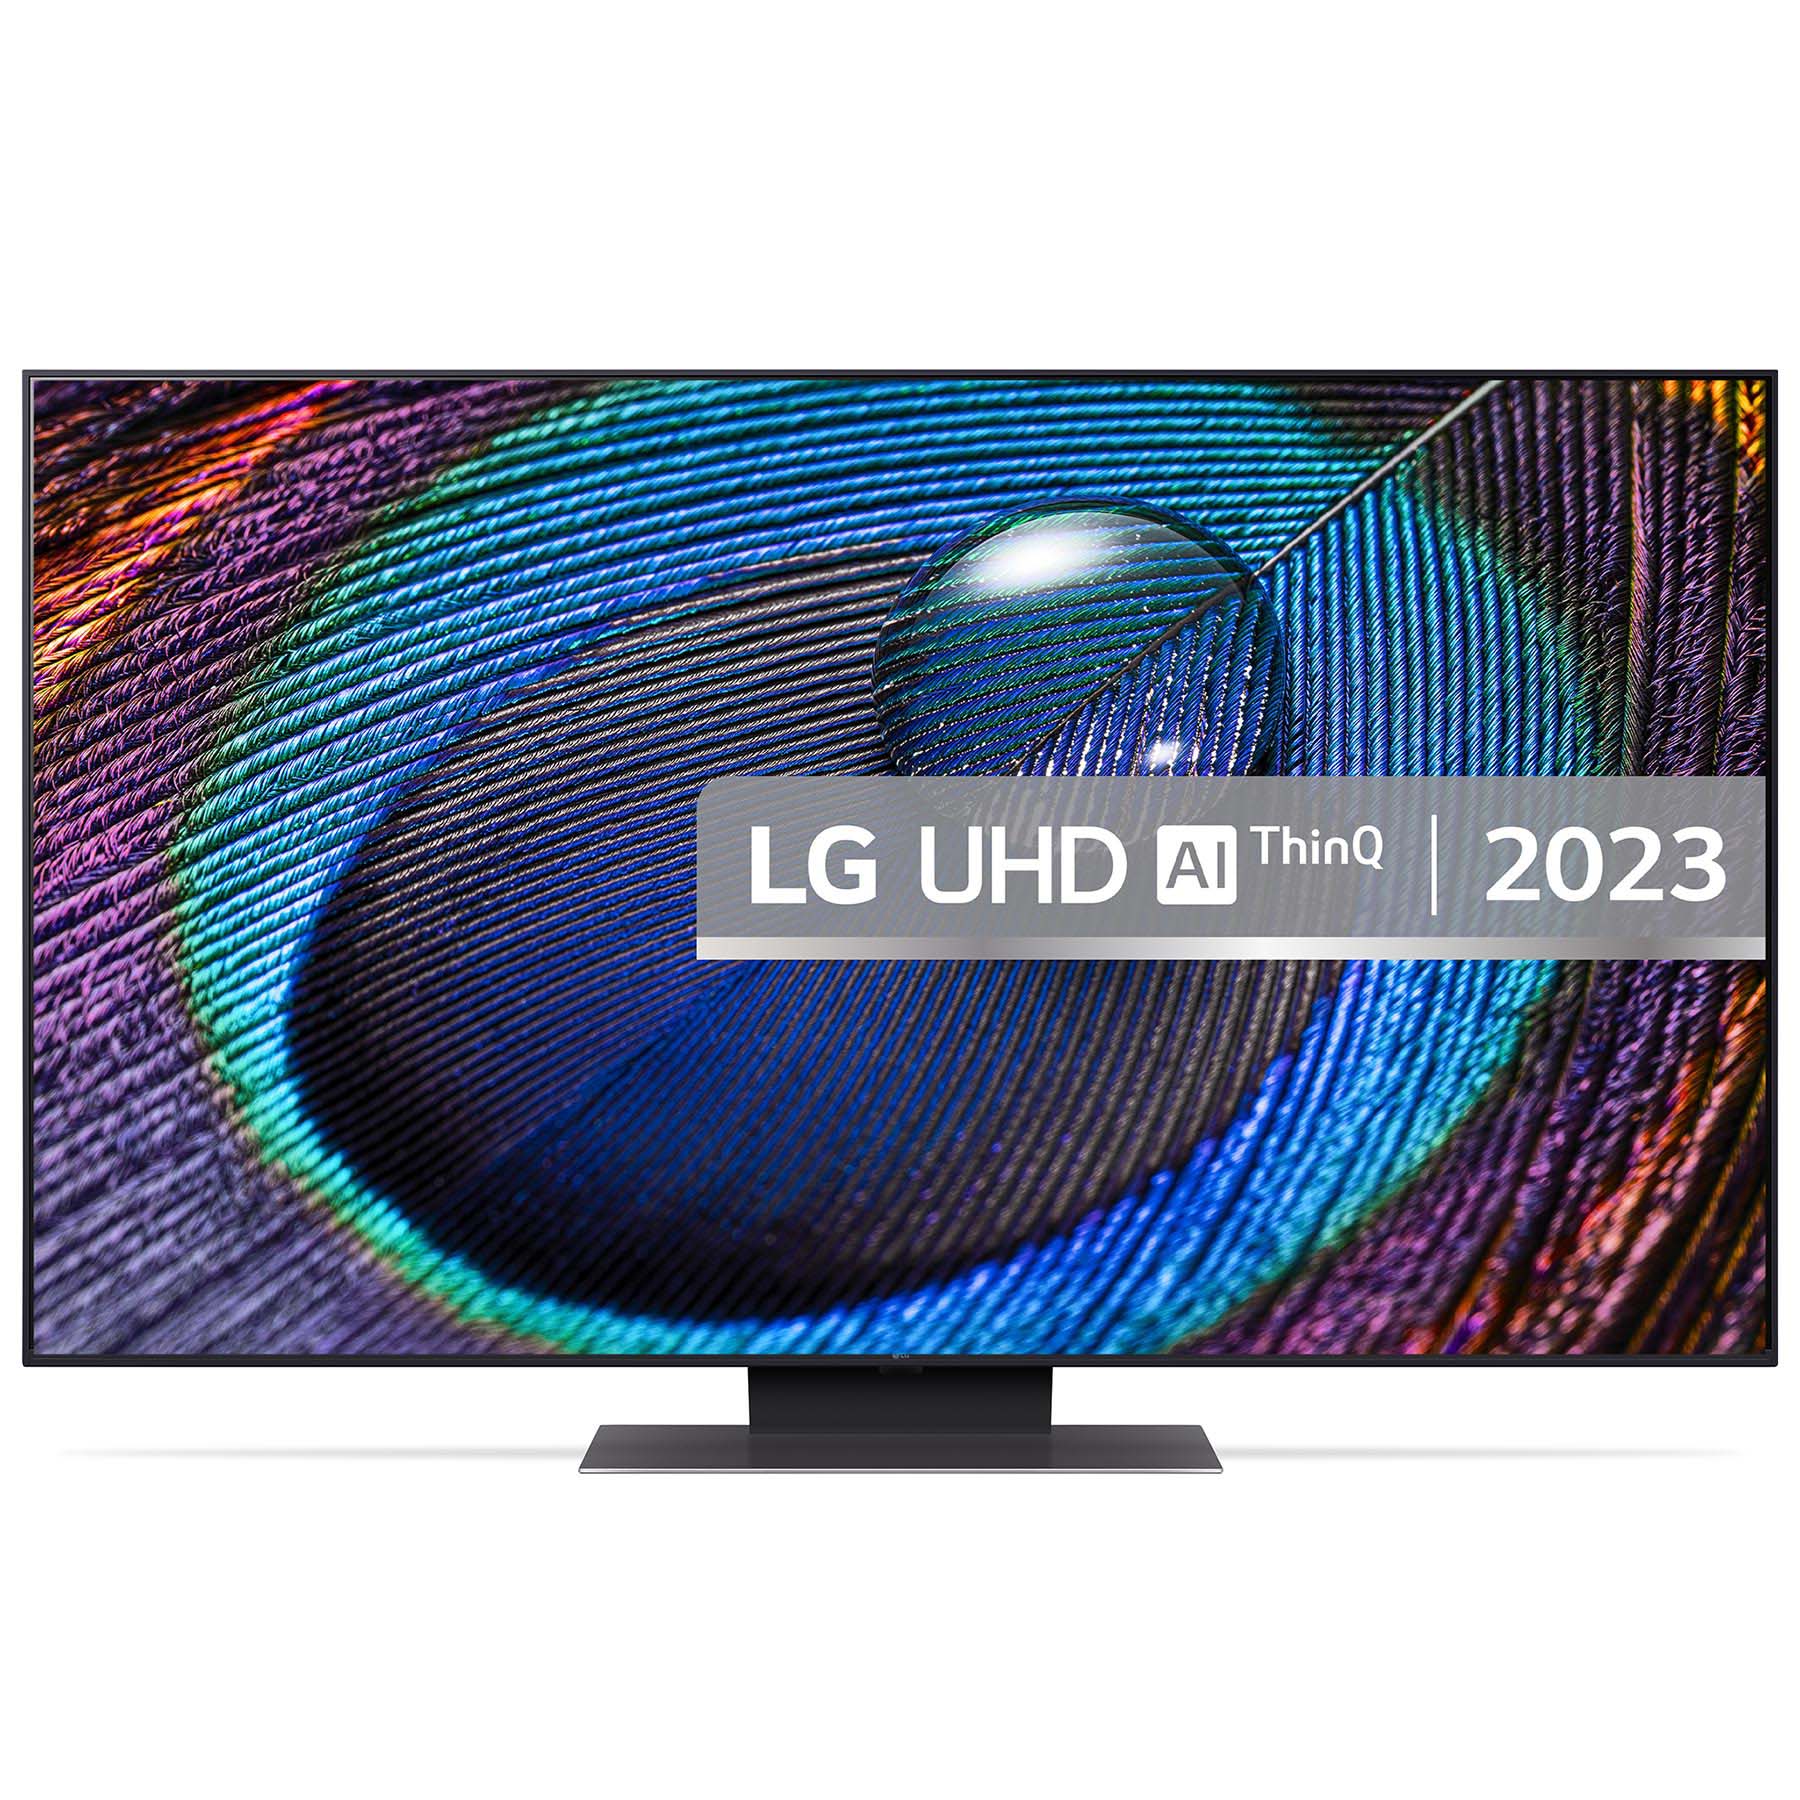 LG 55UR91006LA 55 4K HDR UHD Smart LED TV HDR10 HLG AI Sound Pro